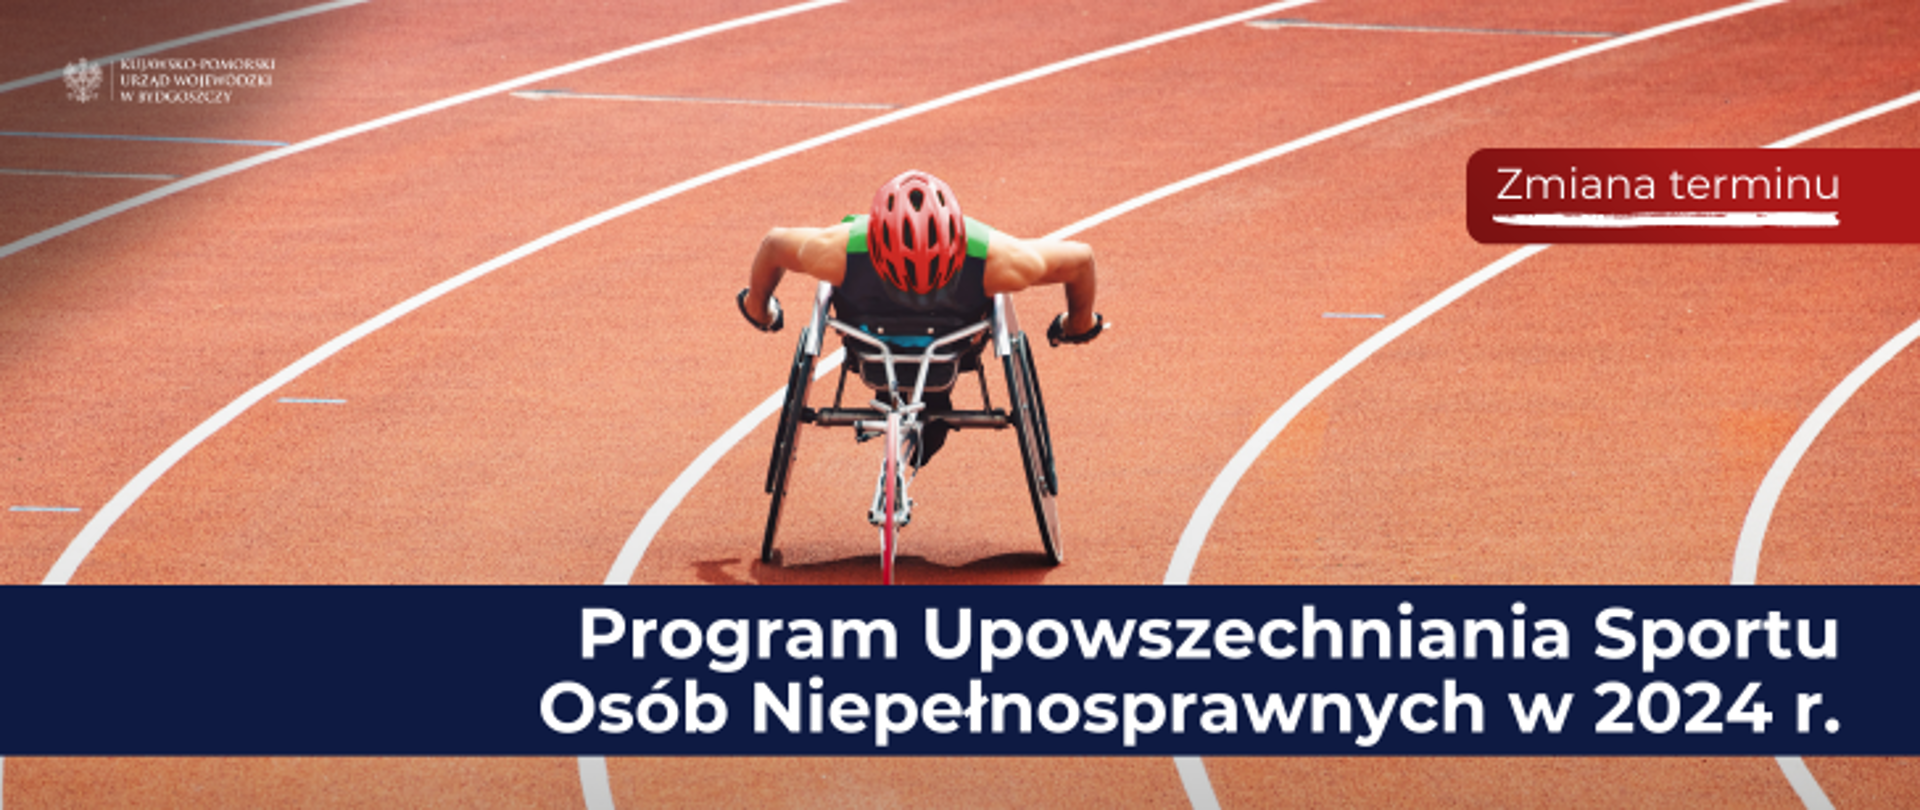 Programu Upowszechniania Sportu Osób Niepełnosprawnych w 2024 r.